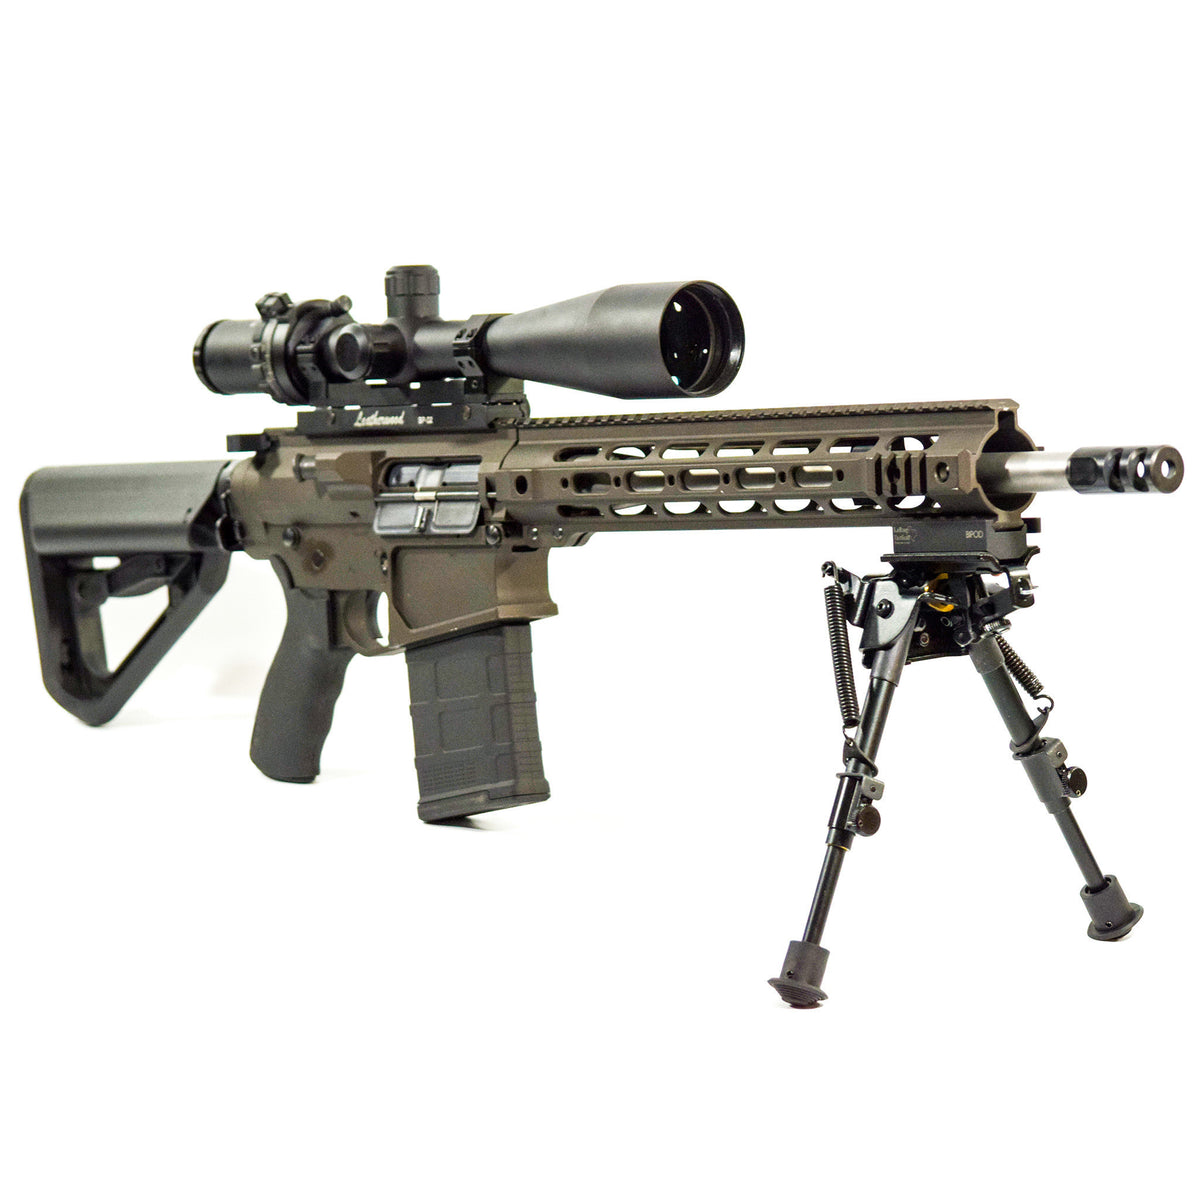 M1200 XLR mounted on AR10